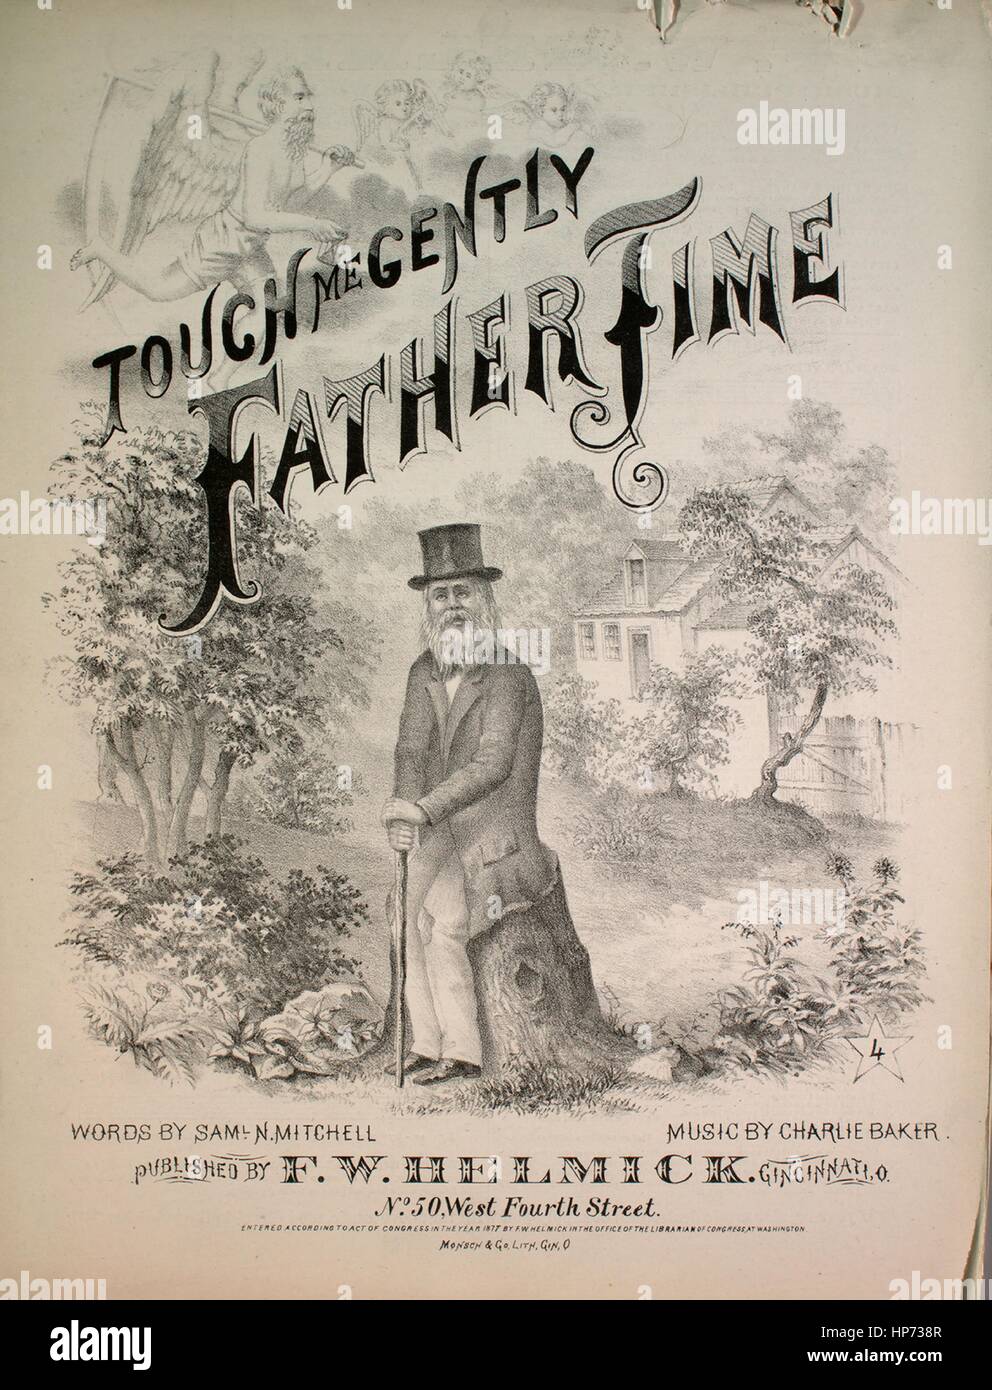 Imagen de cubierta de partituras de la canción "Me toque suavemente el  Padre Tiempo", con notas de autoría original leyendo 'Palabras de SAML N  Mitchell música por Charlie Baker", Estados Unidos, 1877.